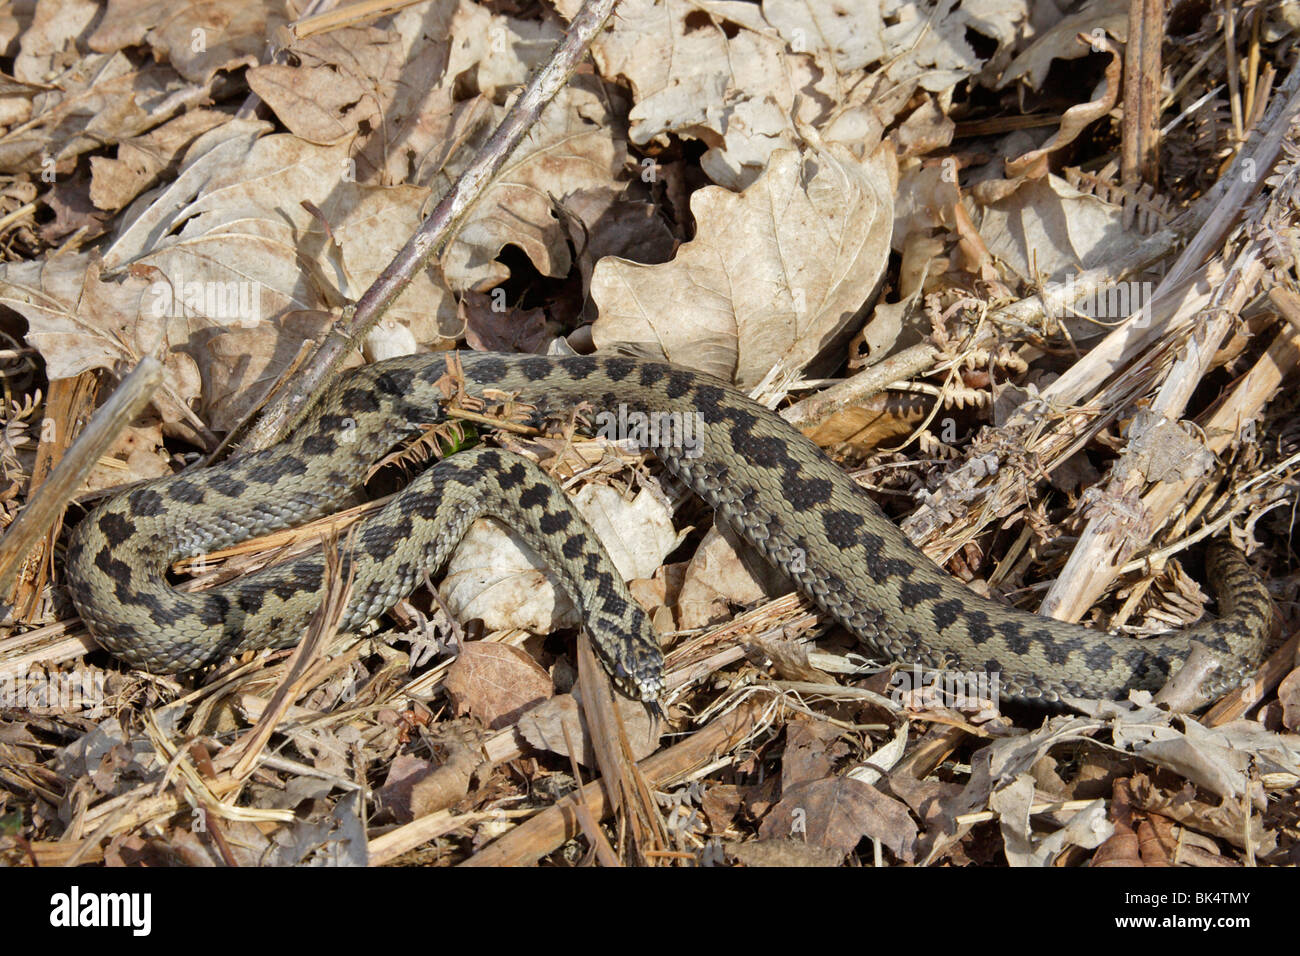 Common Adder snake basking in leaf litter Stock Photo